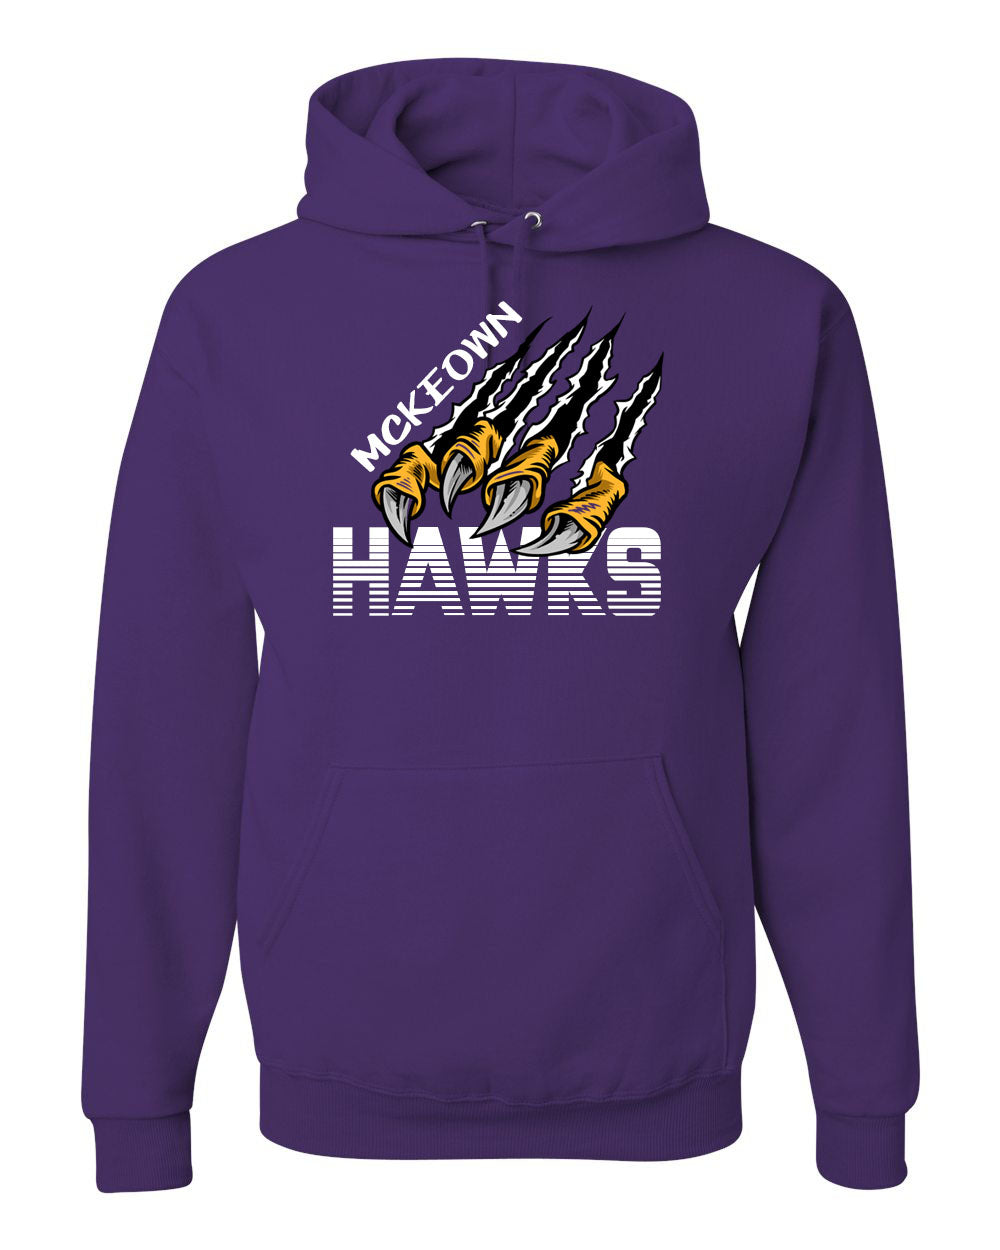 Hawk Claws Hooded Sweatshirt